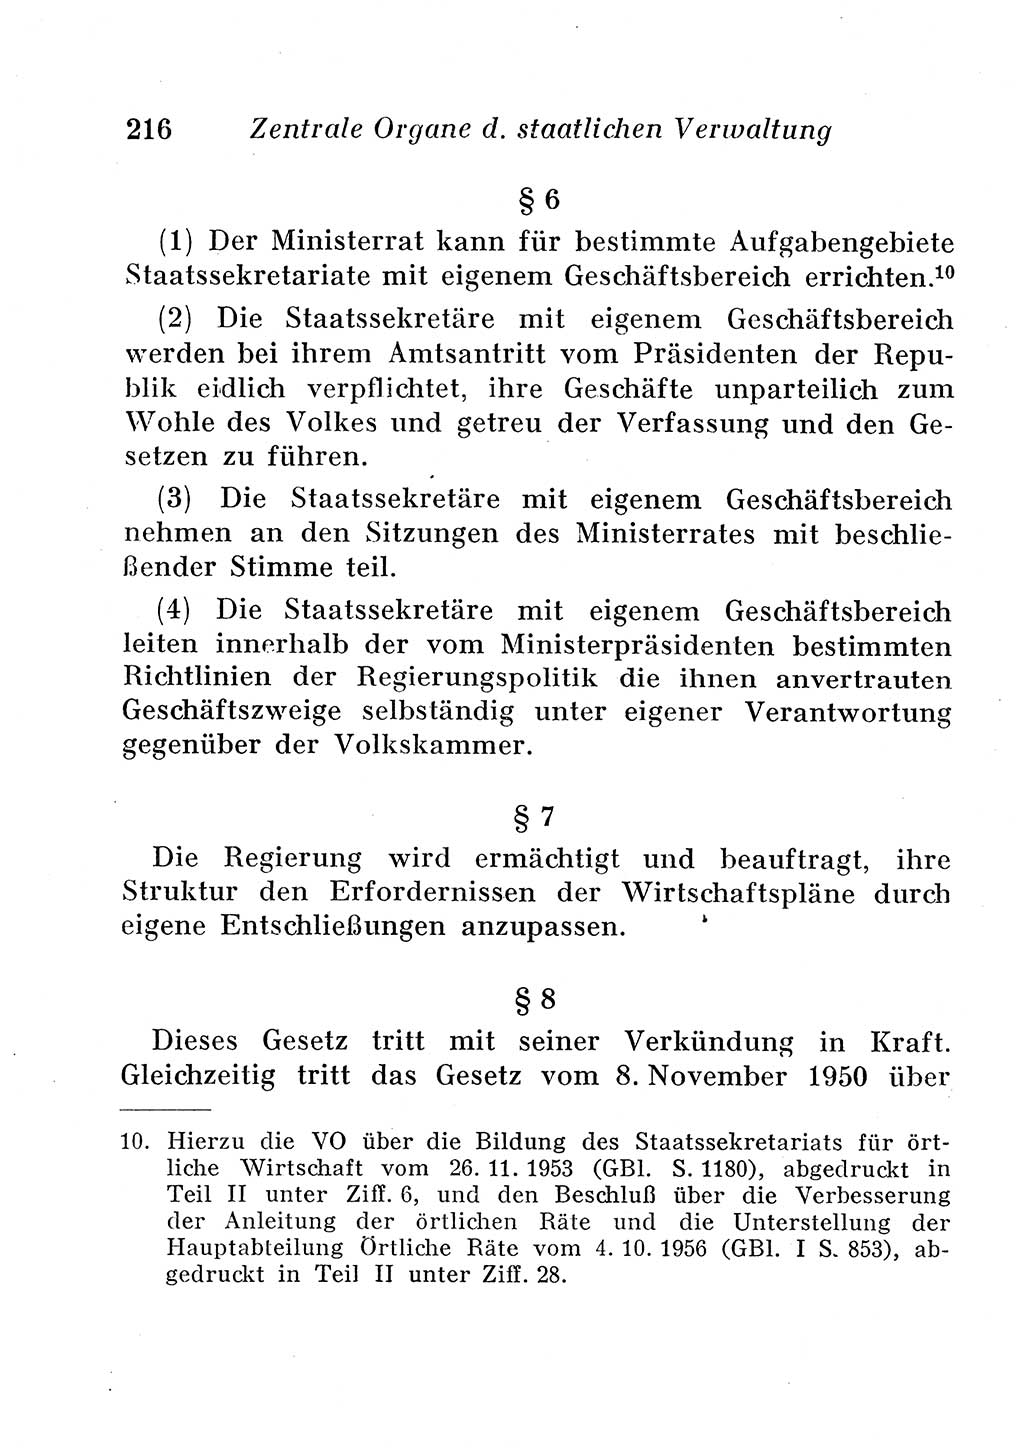 Staats- und verwaltungsrechtliche Gesetze der Deutschen Demokratischen Republik (DDR) 1958, Seite 216 (StVerwR Ges. DDR 1958, S. 216)